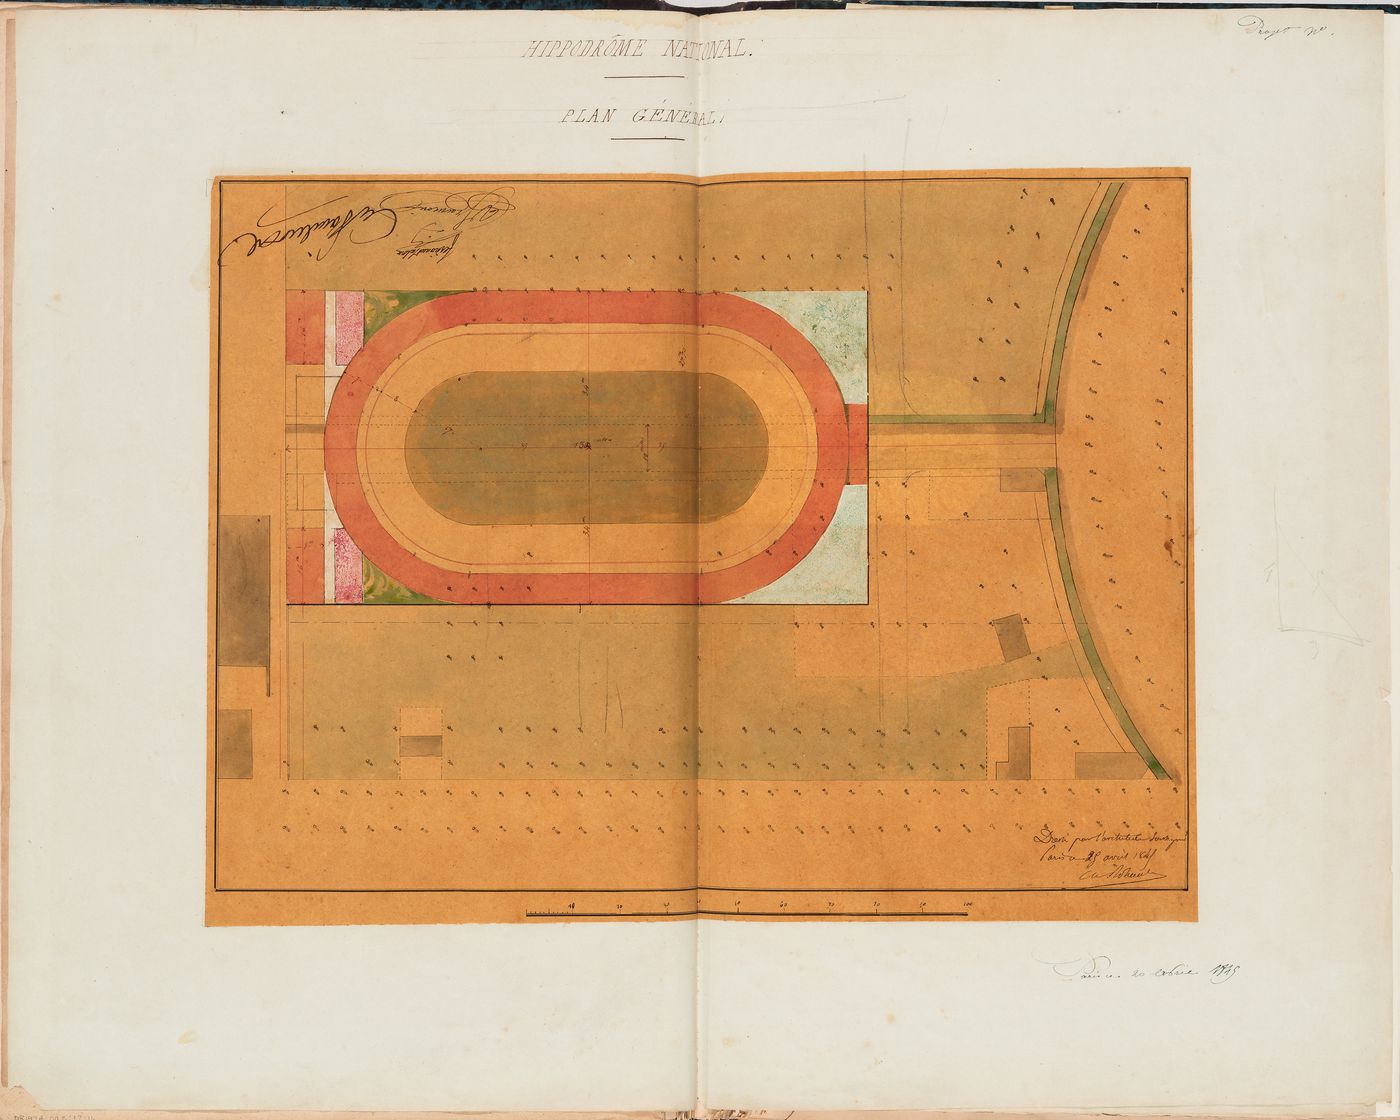 Hippodrome national, Paris: Site plan